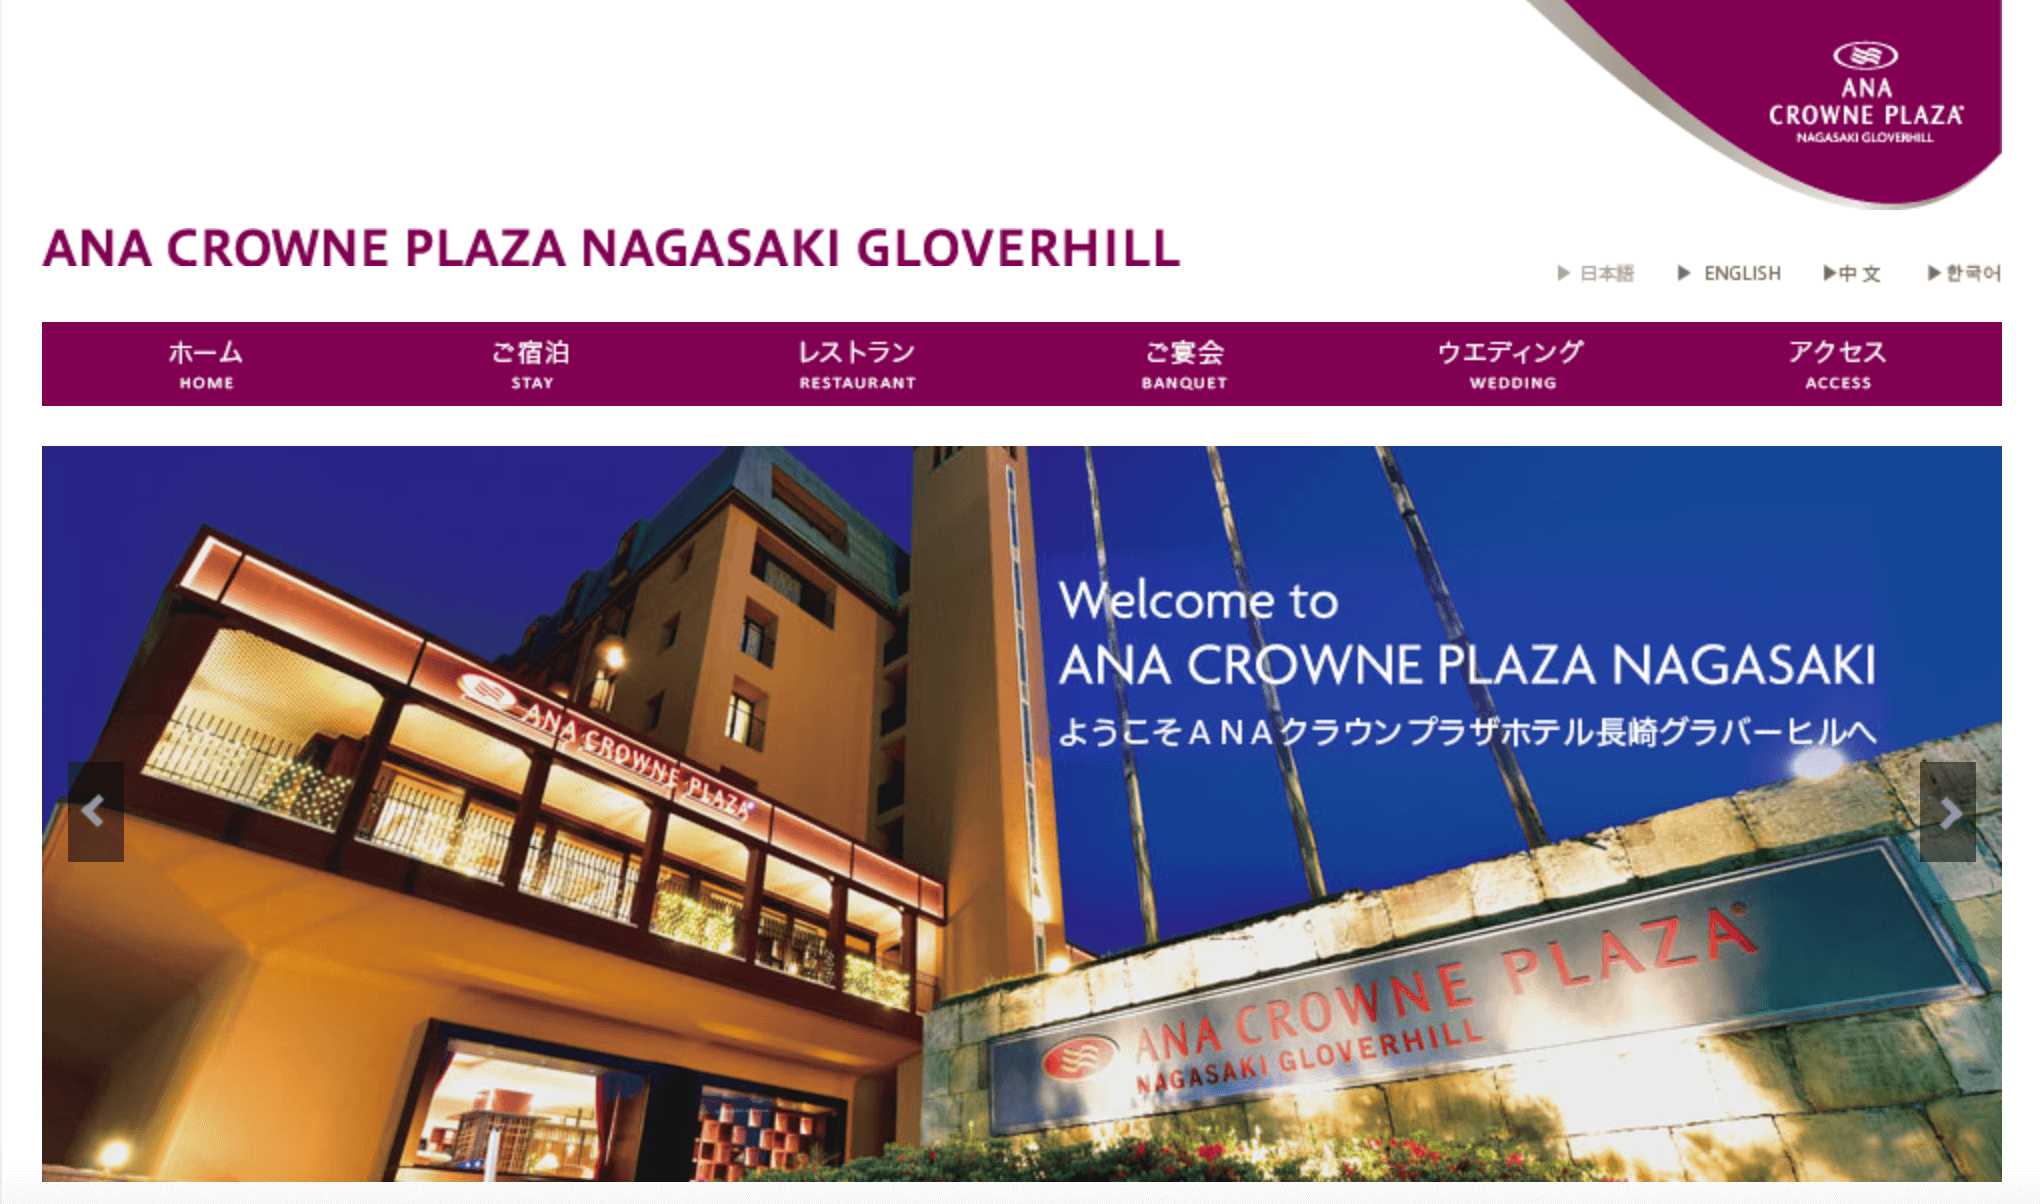 長崎でパパ活におすすめなホテル「ANAクラウンプラザホテル長崎グラバーヒル」